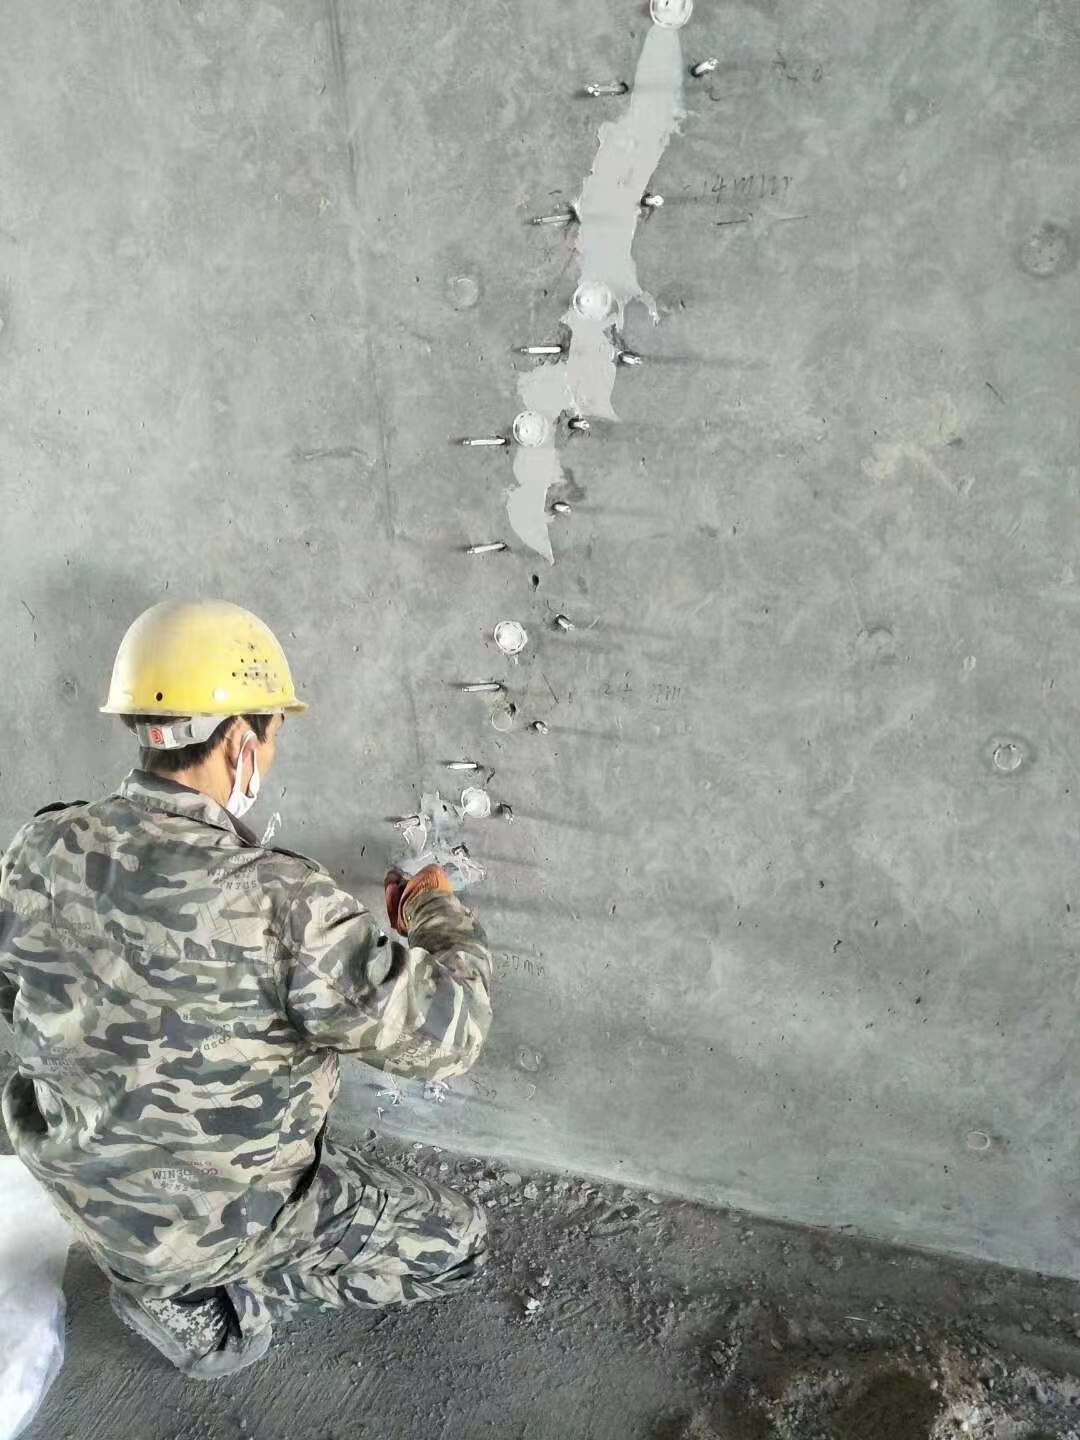 晋安混凝土楼板裂缝加固施工的方案